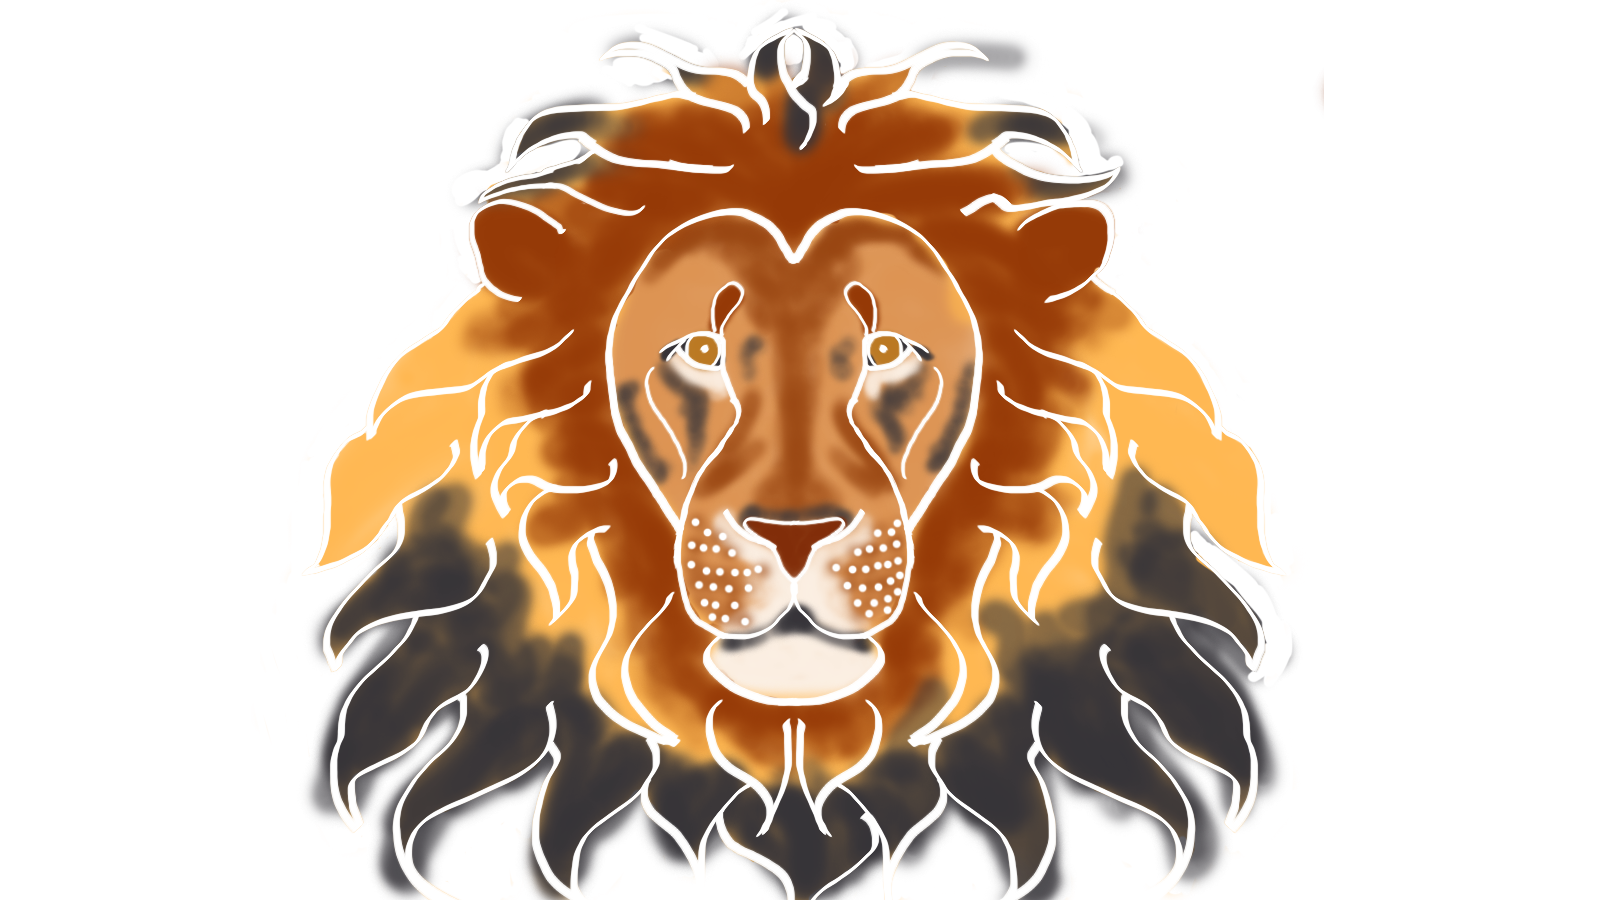 Lion_Face_Concept